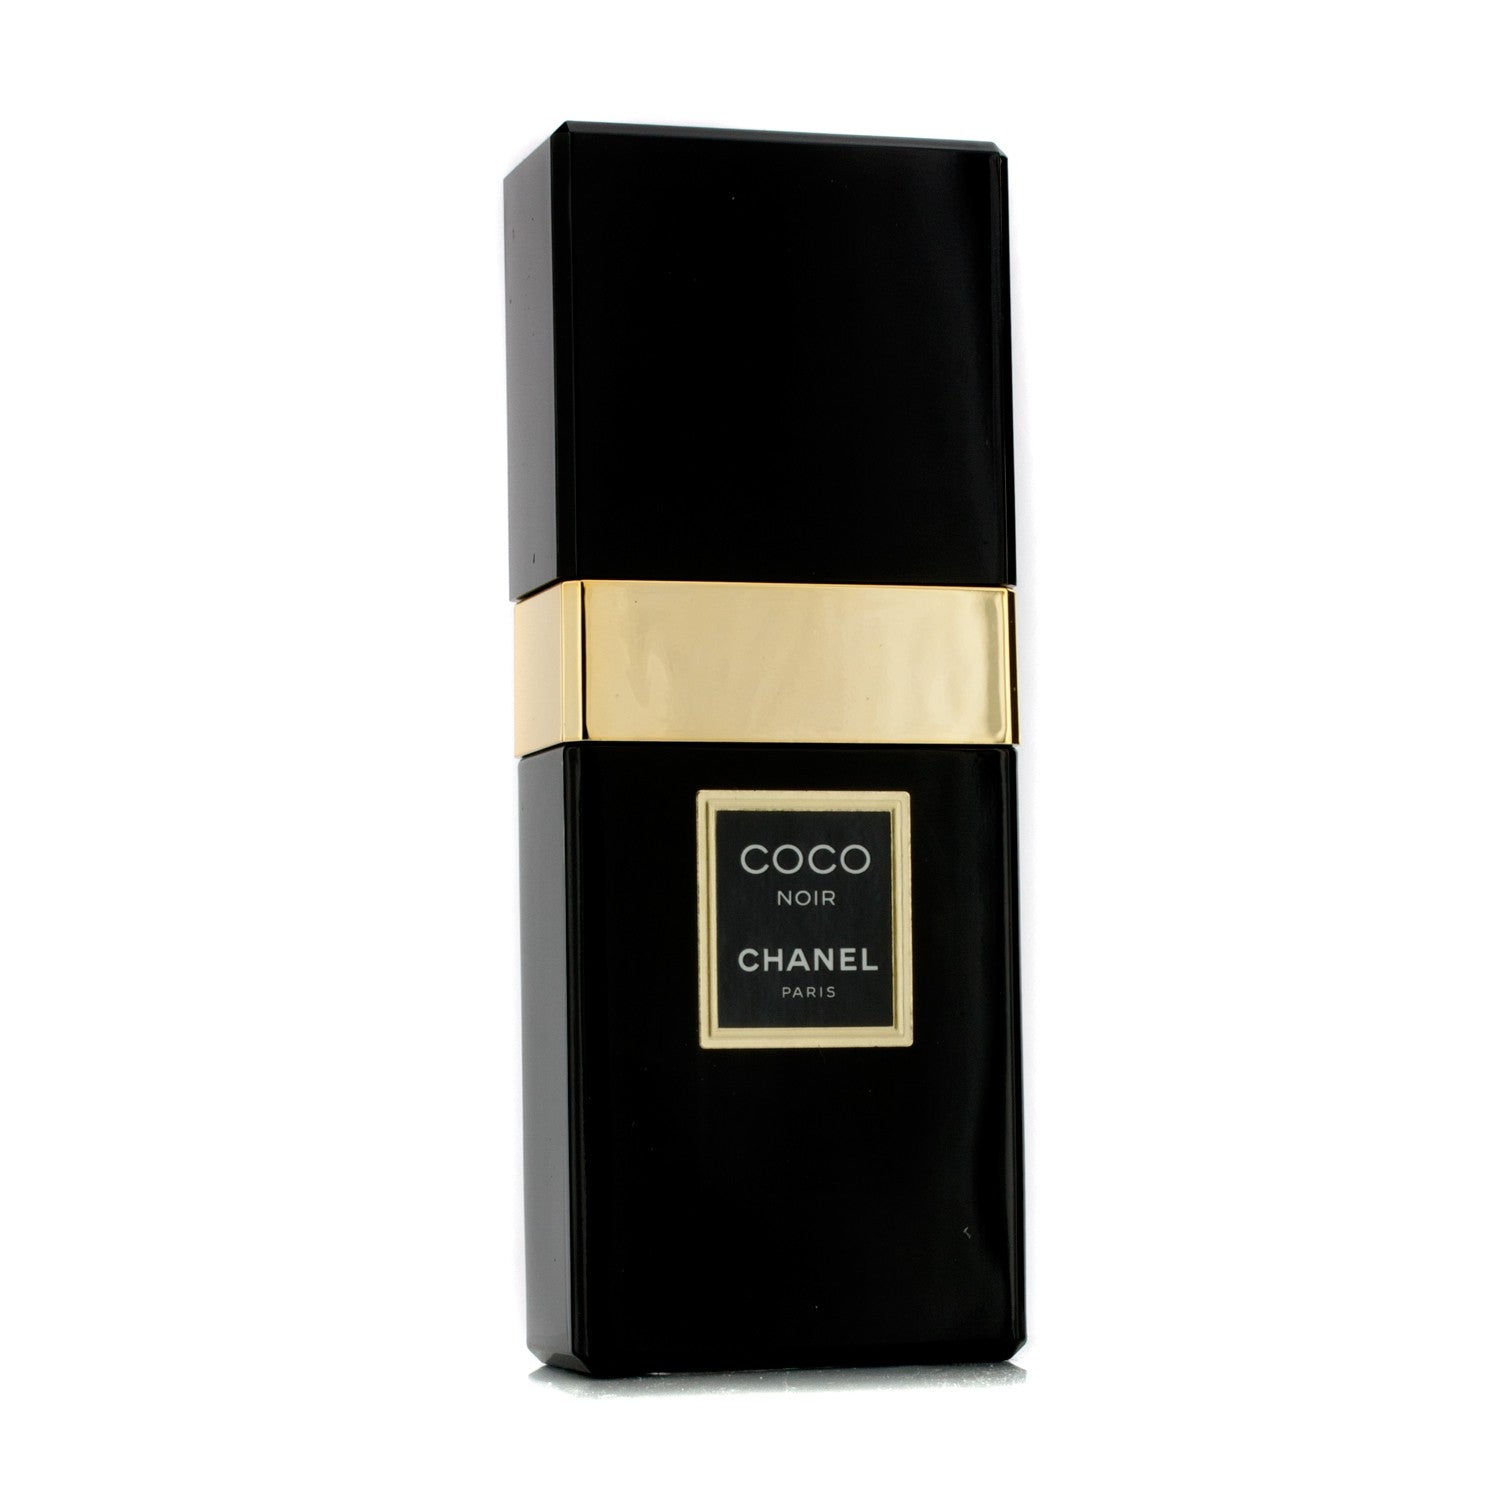 Coco Noir Eau de Parfum 30ml $116 - Her World Singapore